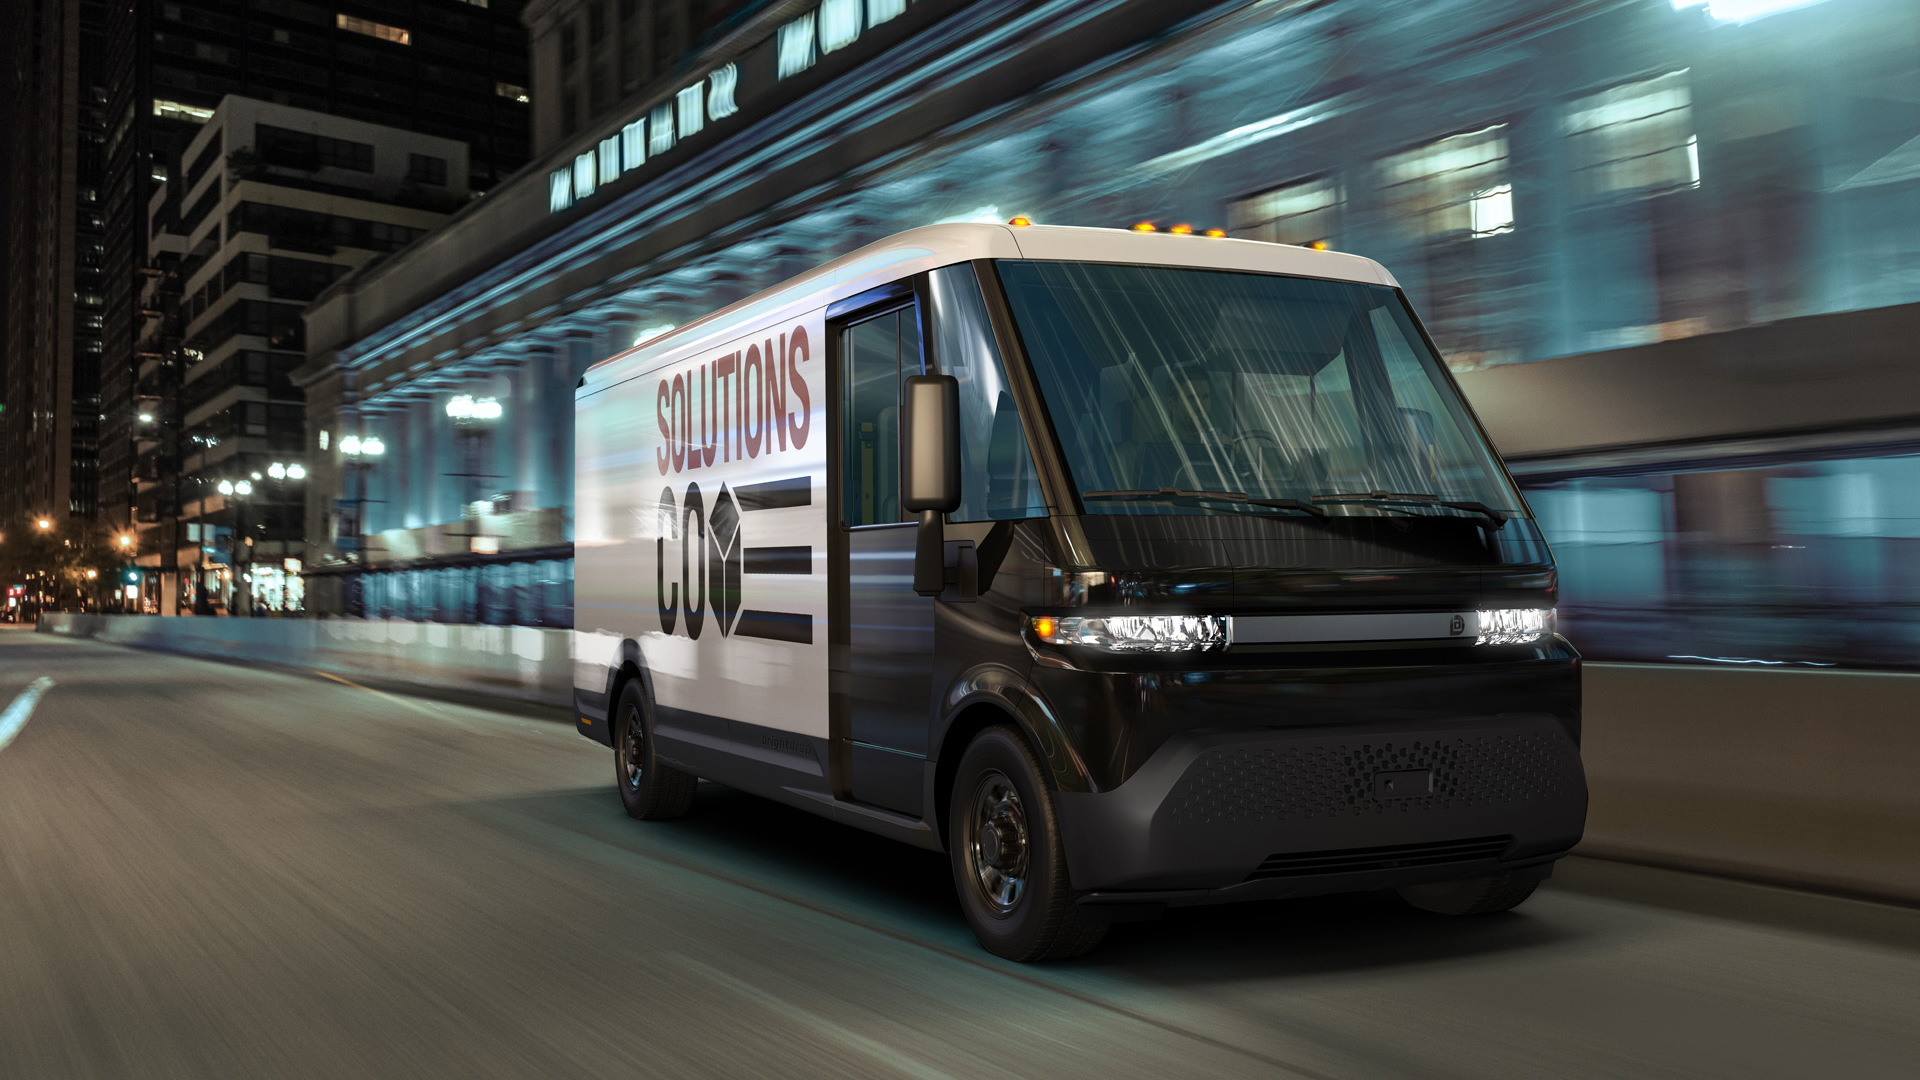 GM shows electric delivery van based on Ultium platform